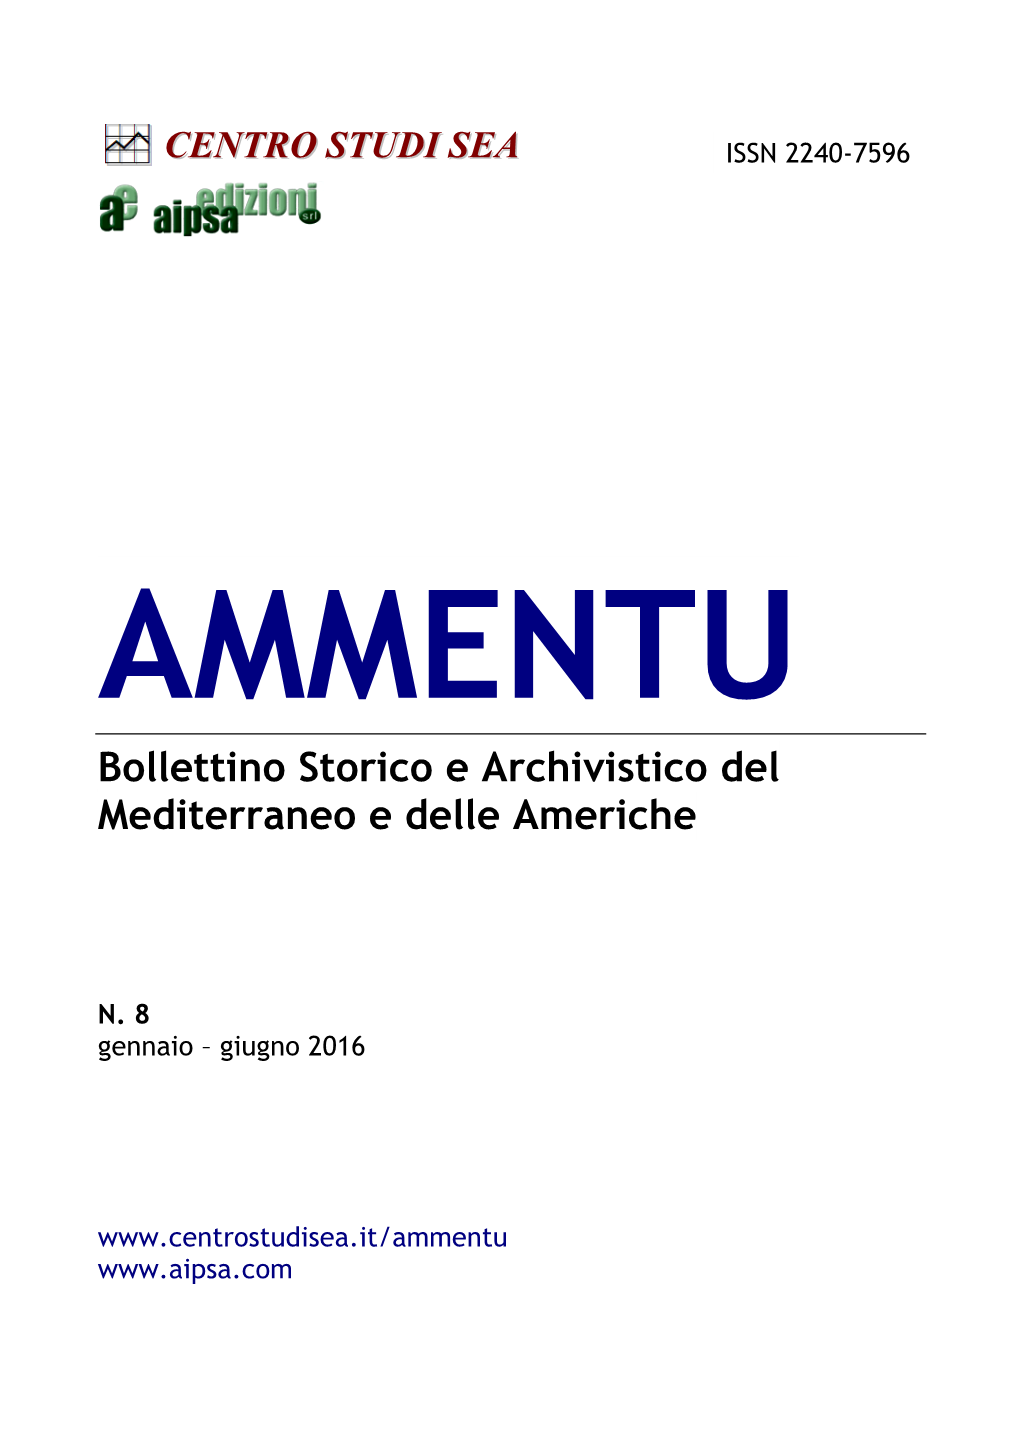 AMMENTU Bollettino Storico E Archivistico Del Mediterraneo E Delle Americhe